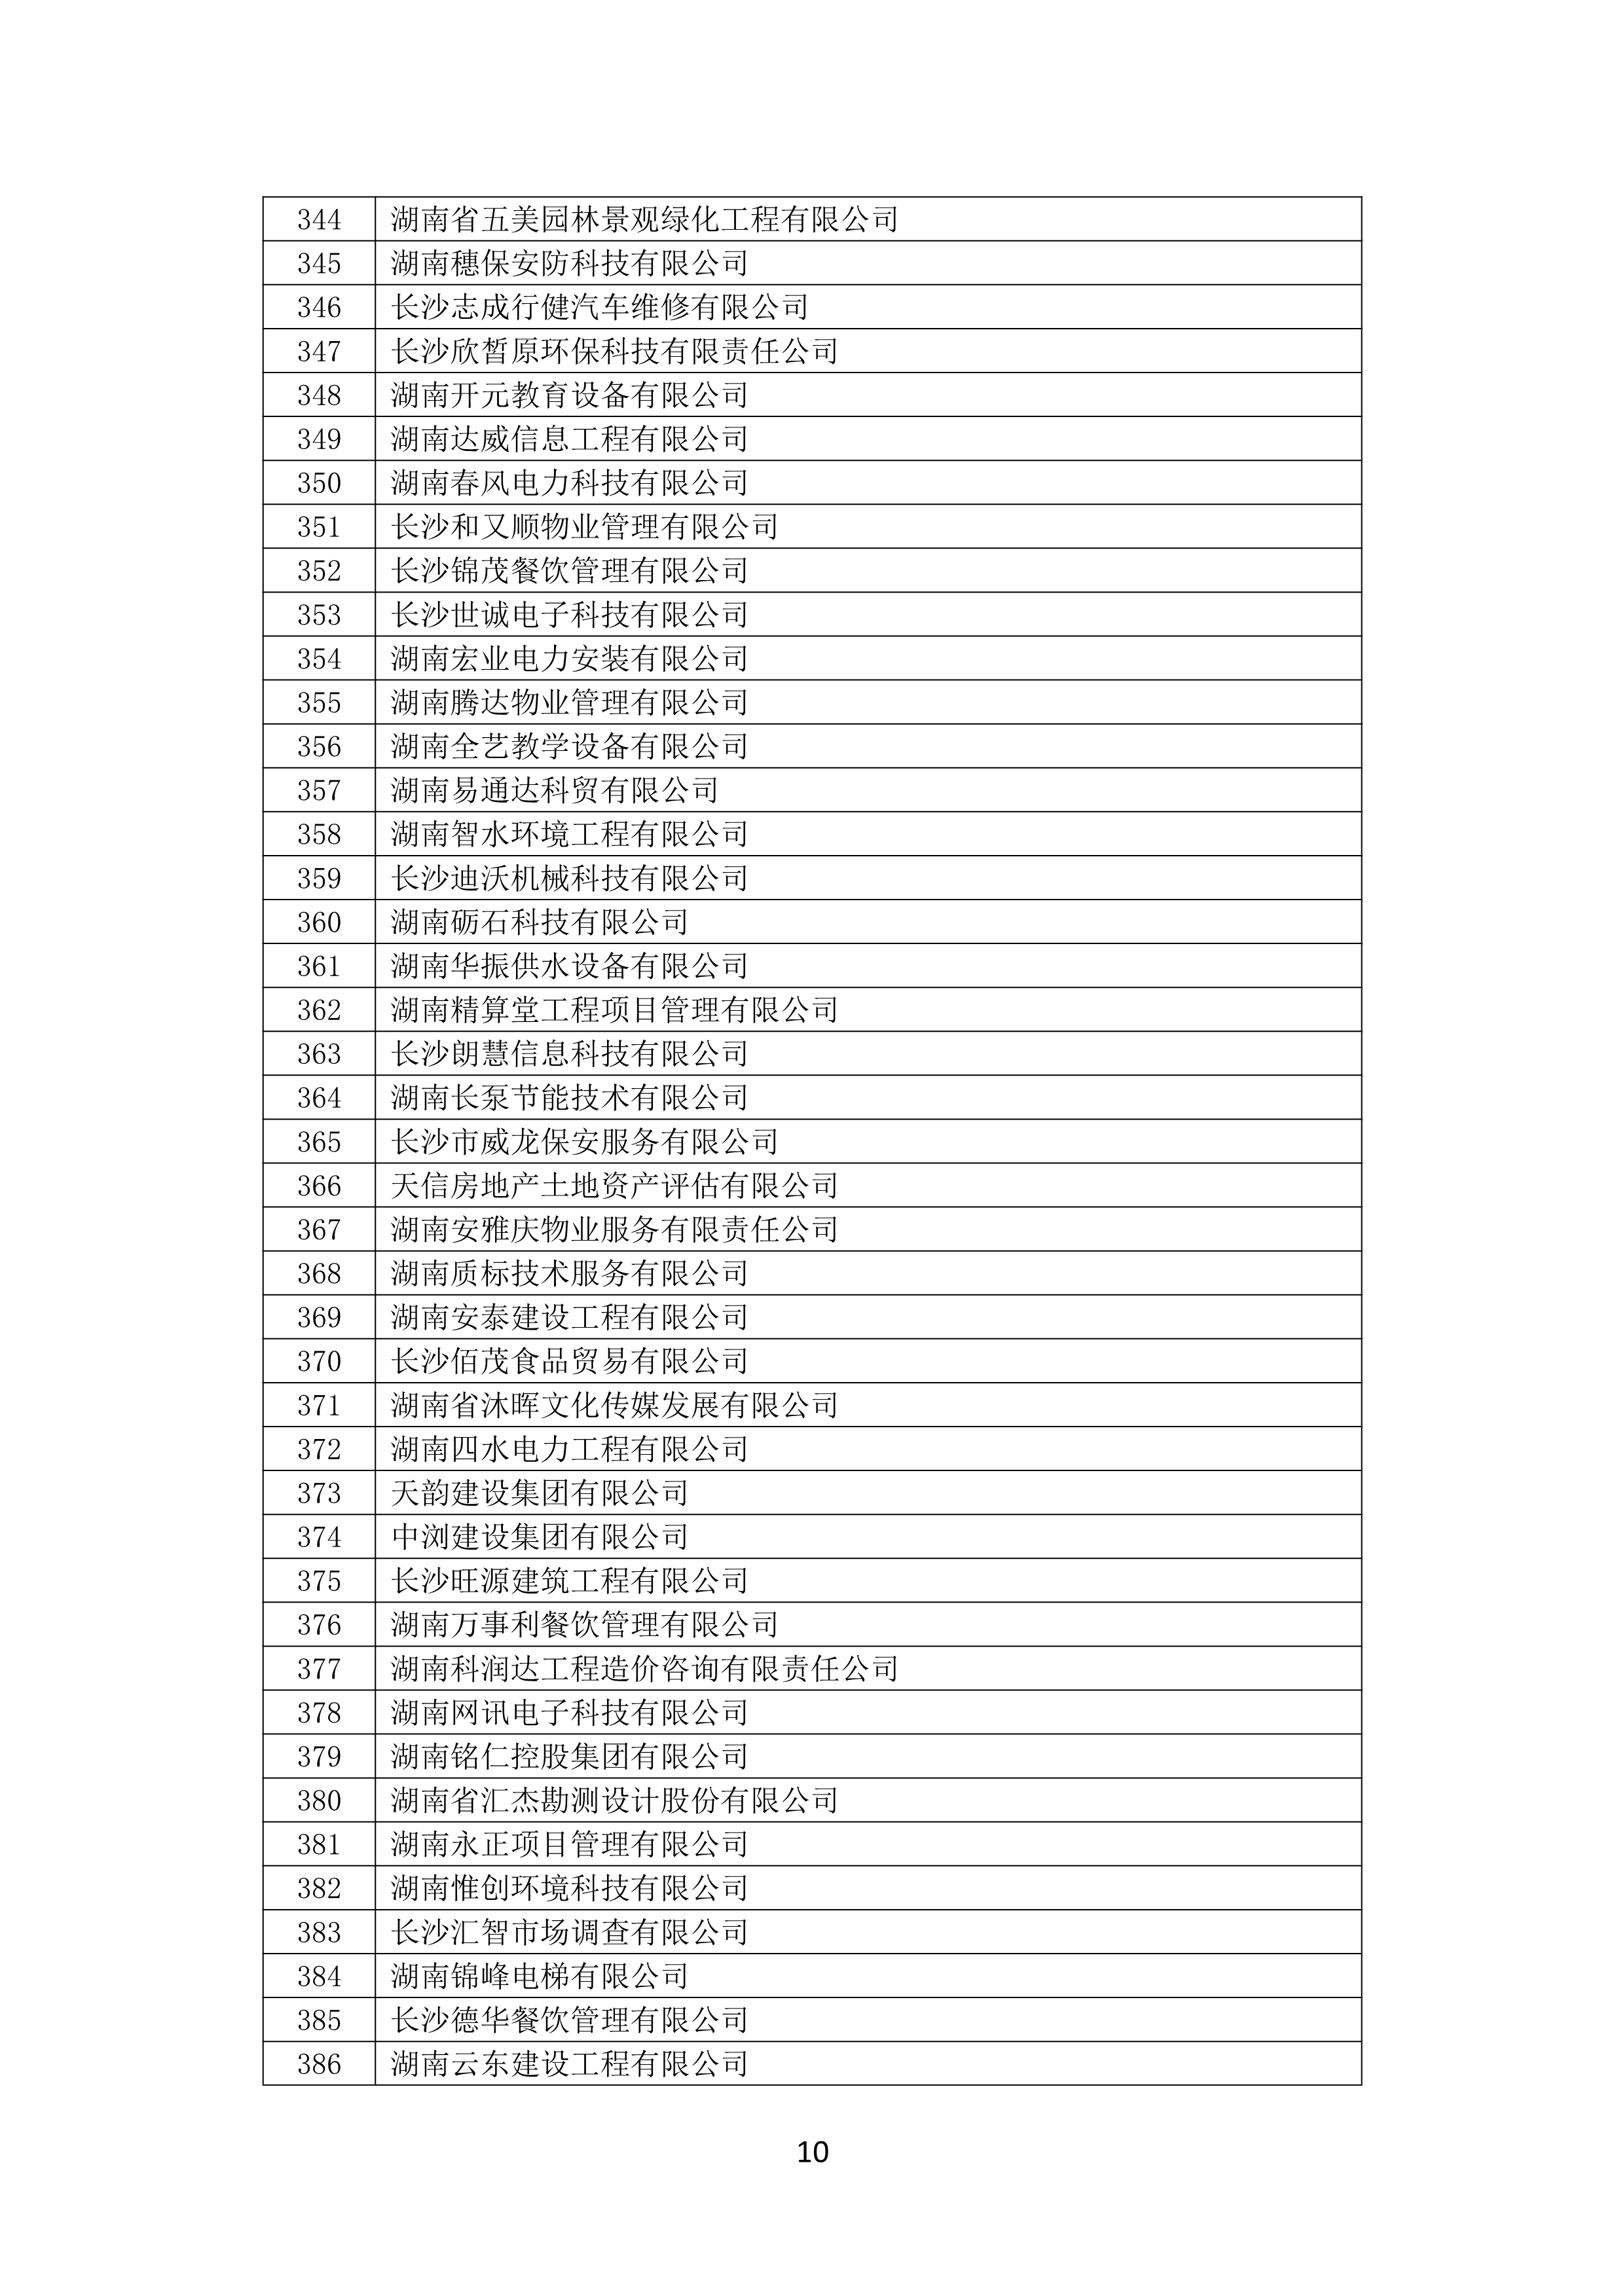 2021 年(nián)度湖南省守合同重信用企業名單_11.png